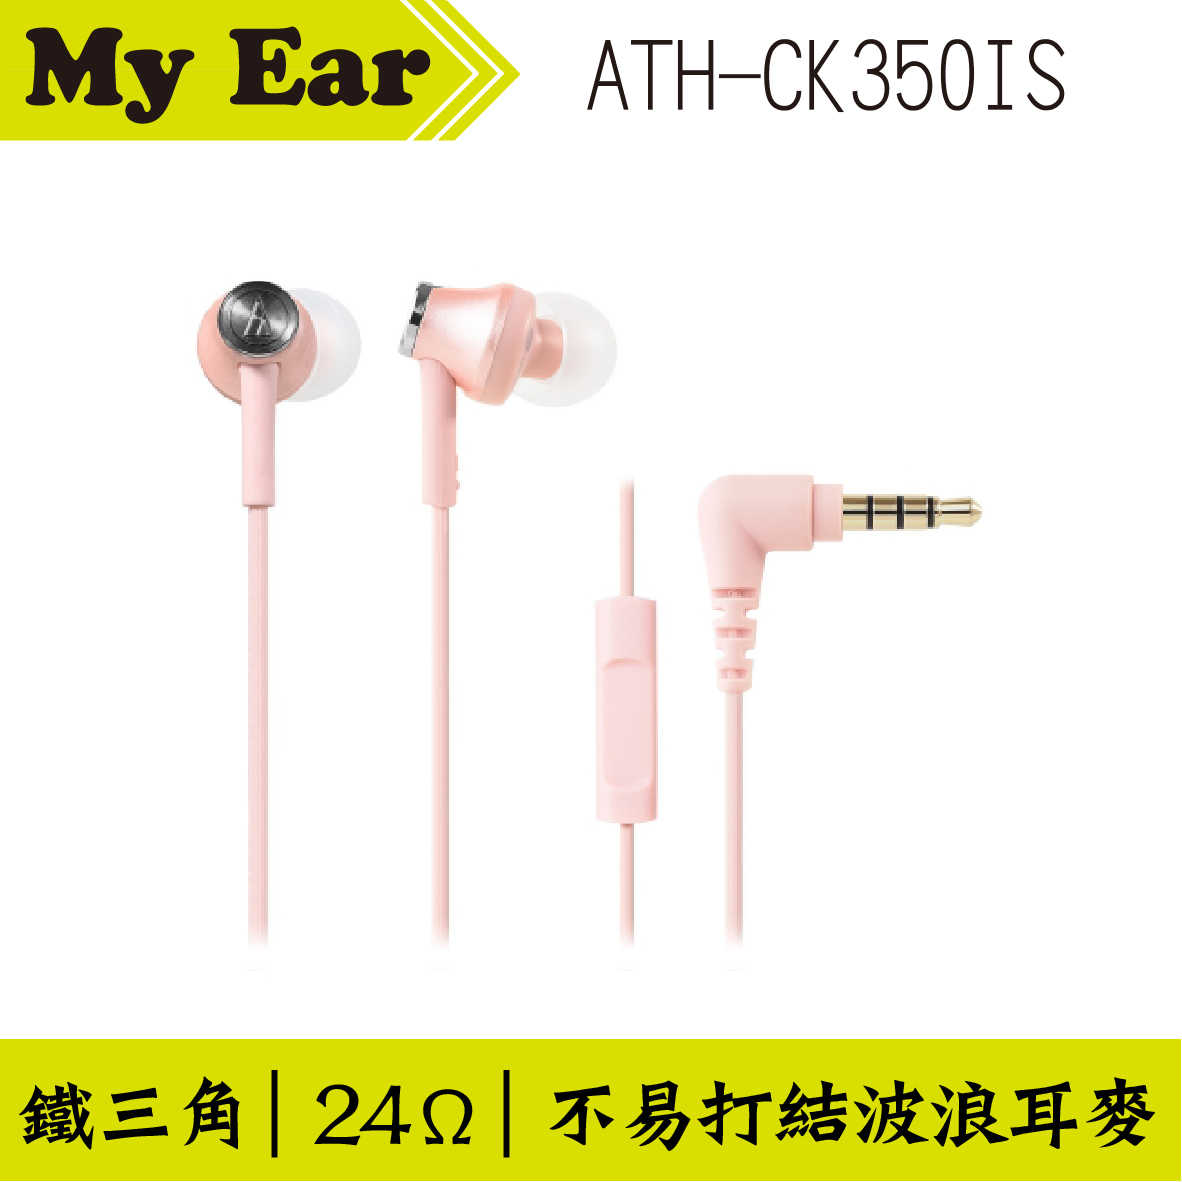 鐵三角 ATH-CK350IS 耳機麥克風 紅色  | My Ear 耳機專門店